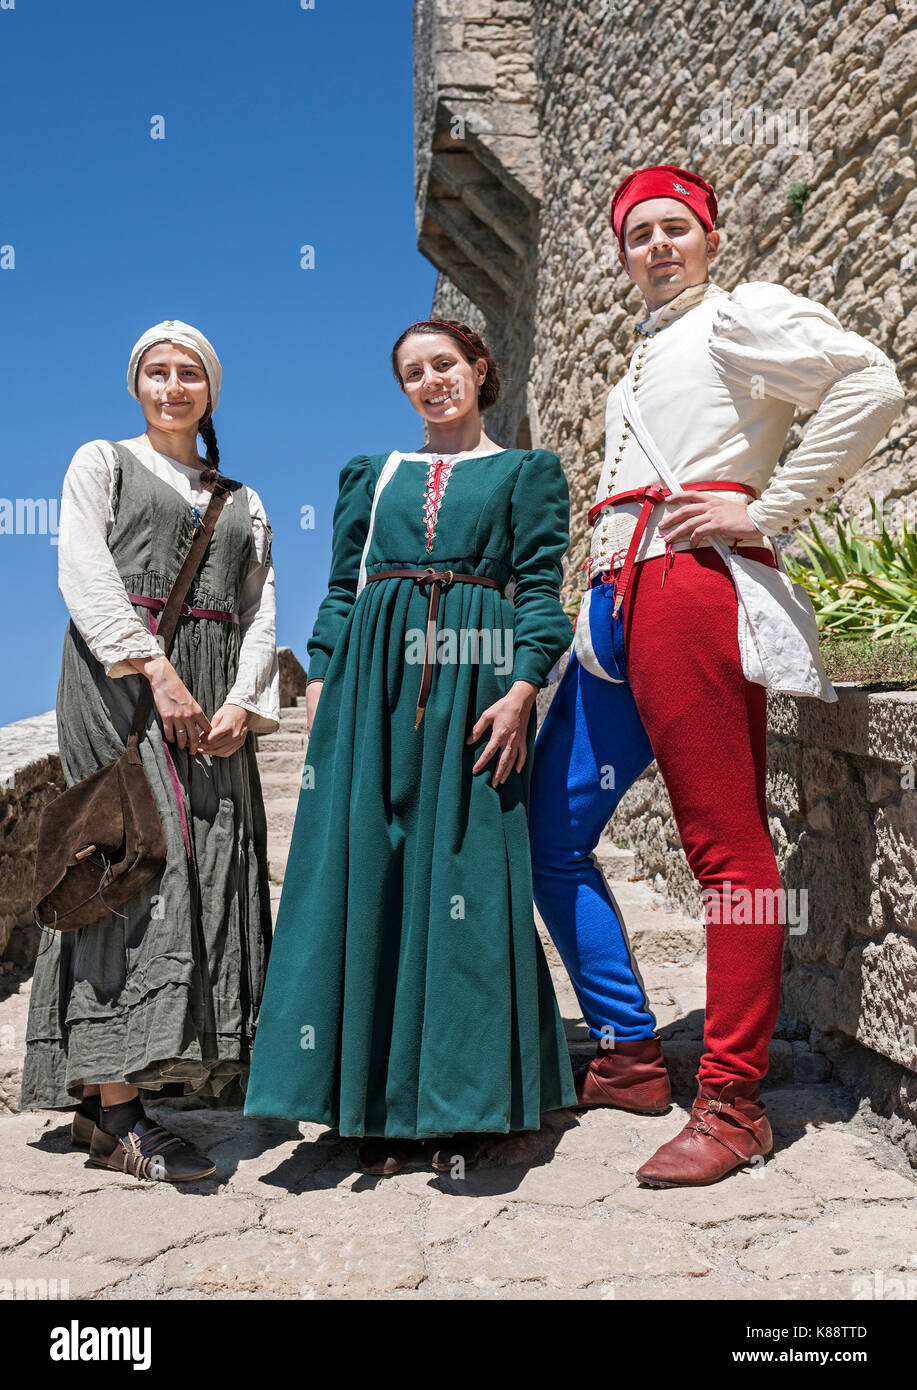 Marinis San habillés et d'effectuer en costumes pour le Festival Médiéval annuel tenu dans la vieille ville de Saint-Marin. Banque D'Images